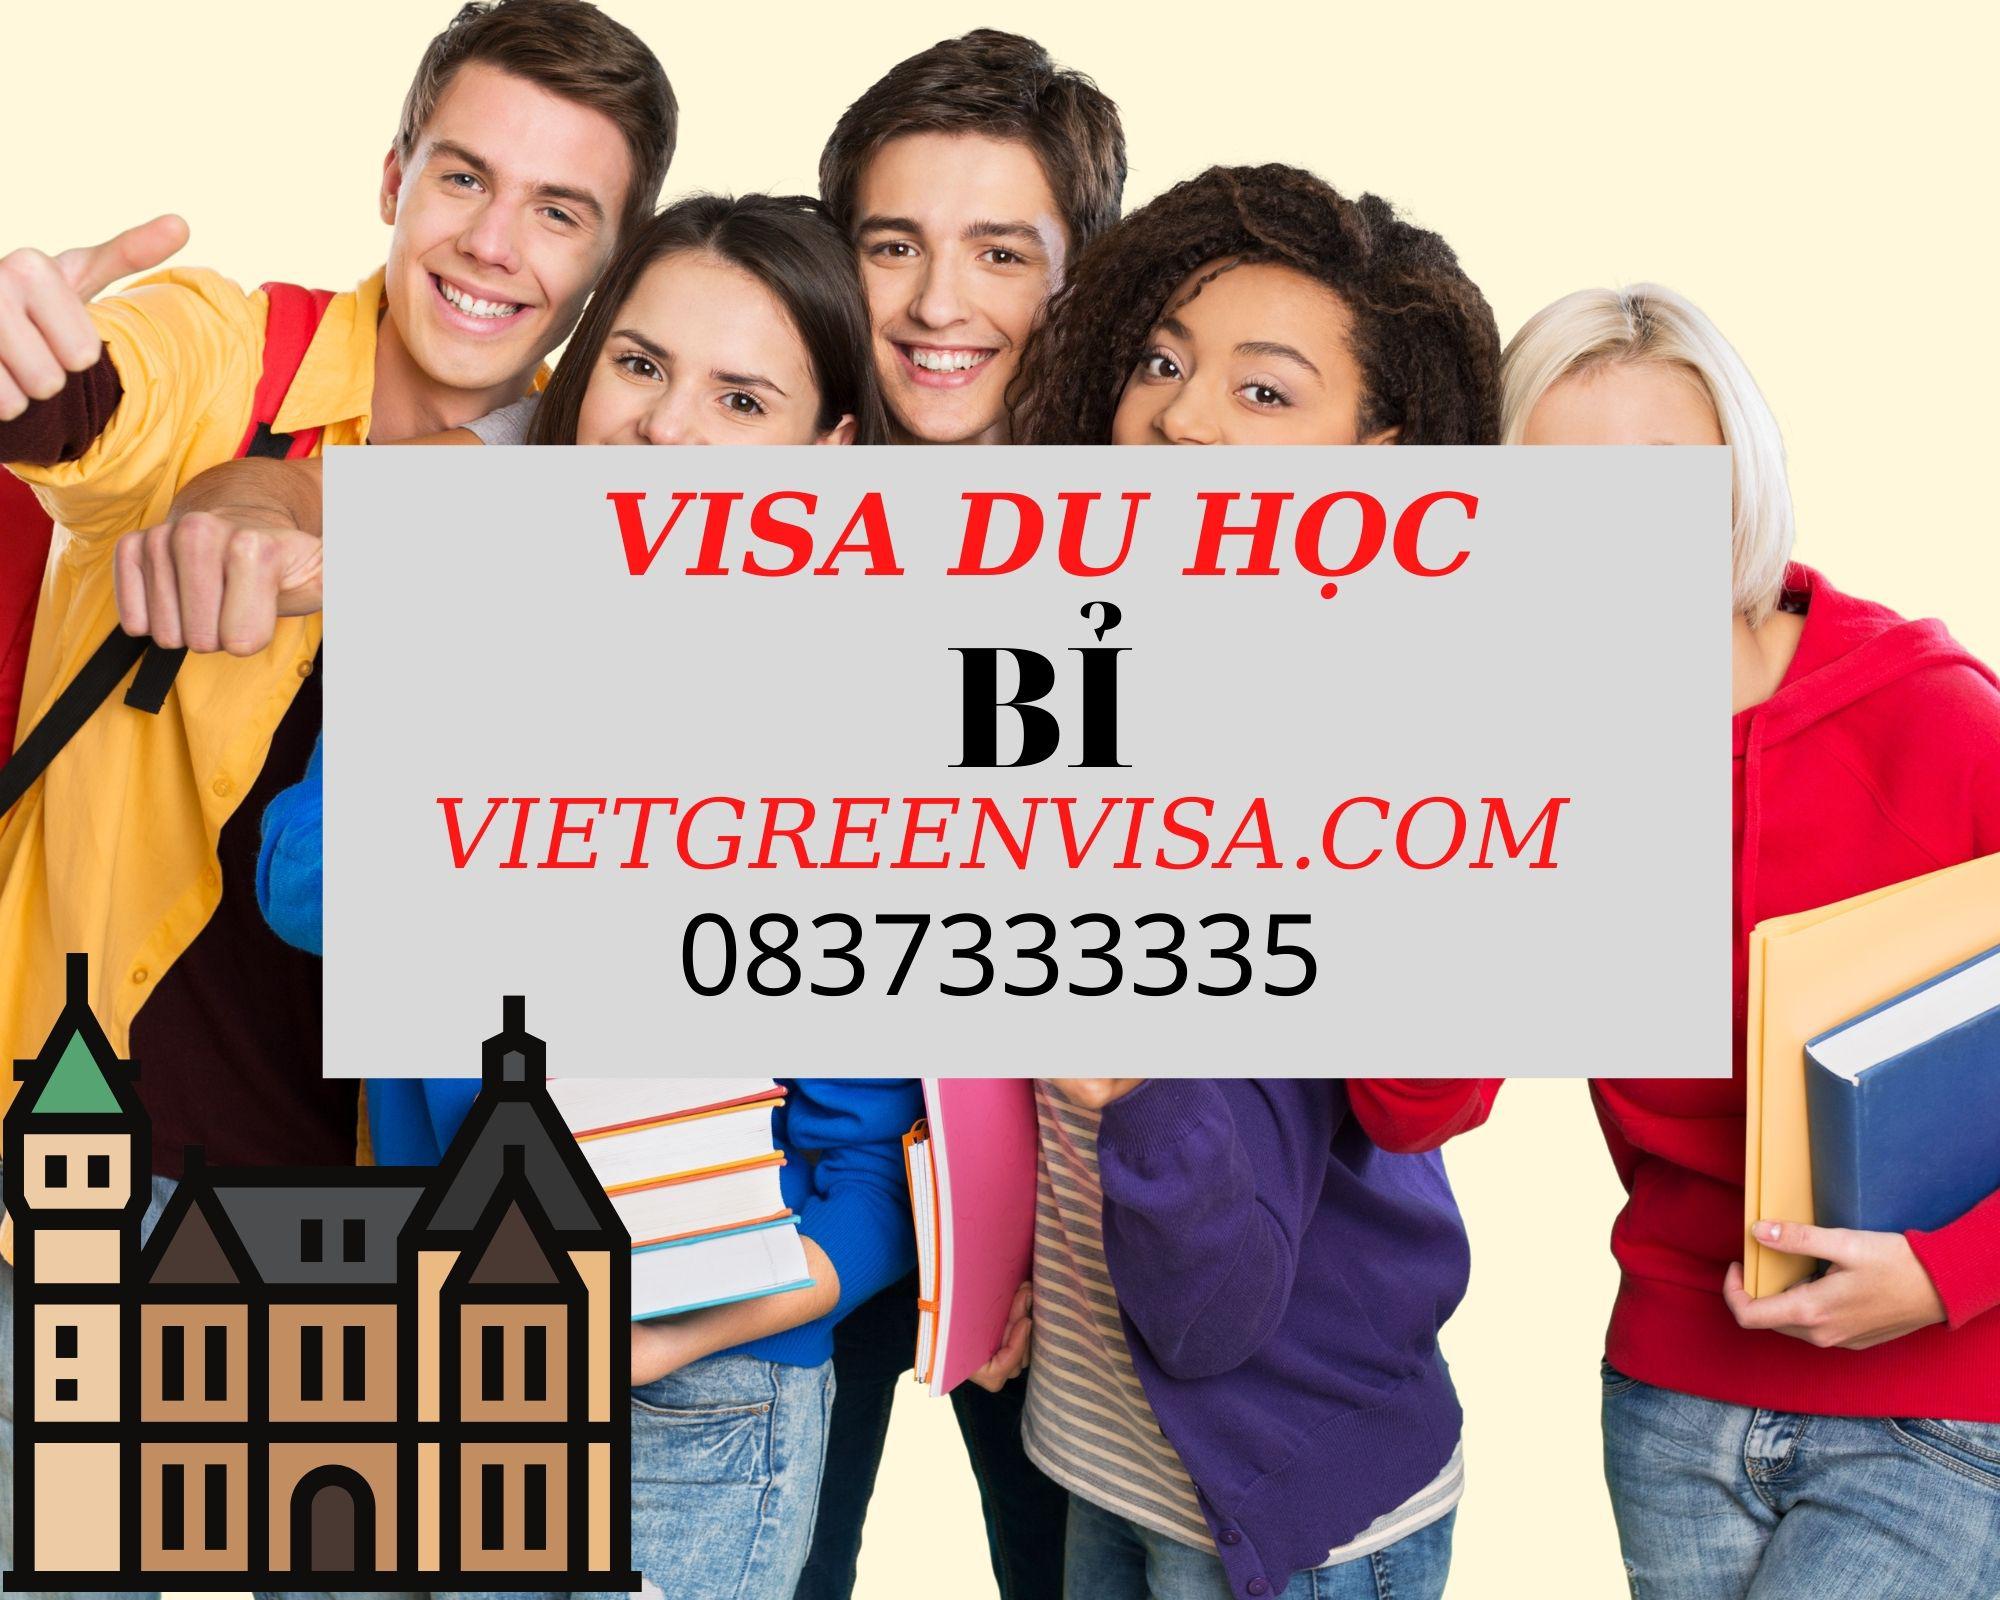 Dịch vụ hỗ trợ visa du học Bỉ trọn gói